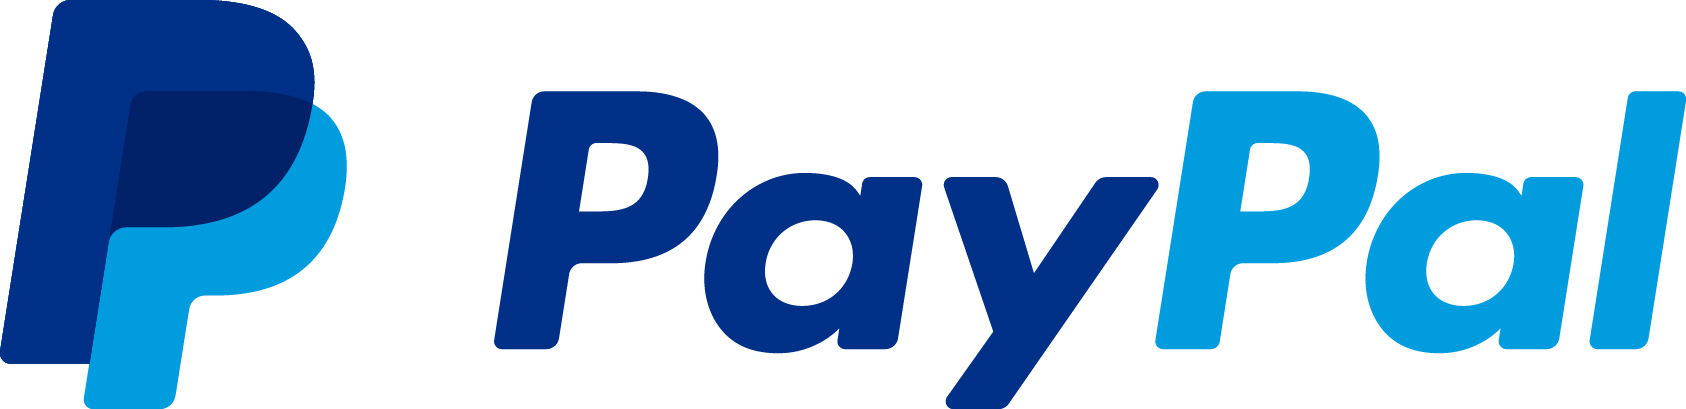 PayPal China